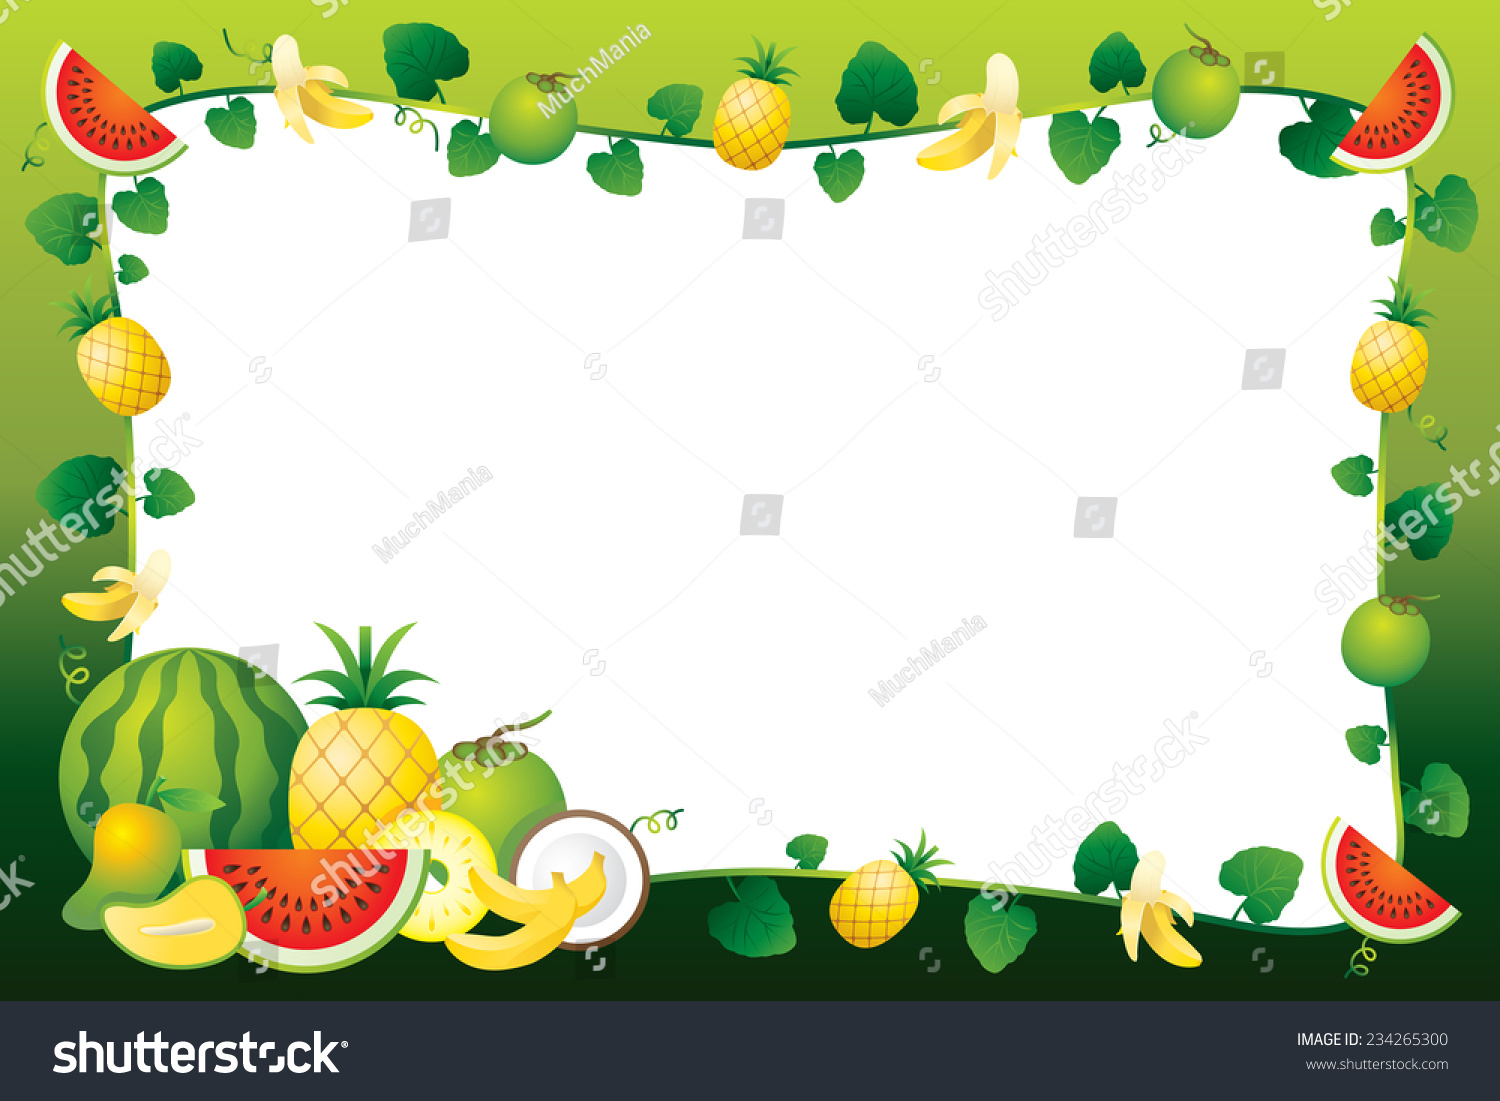 Рамки с фруктами для детского сада